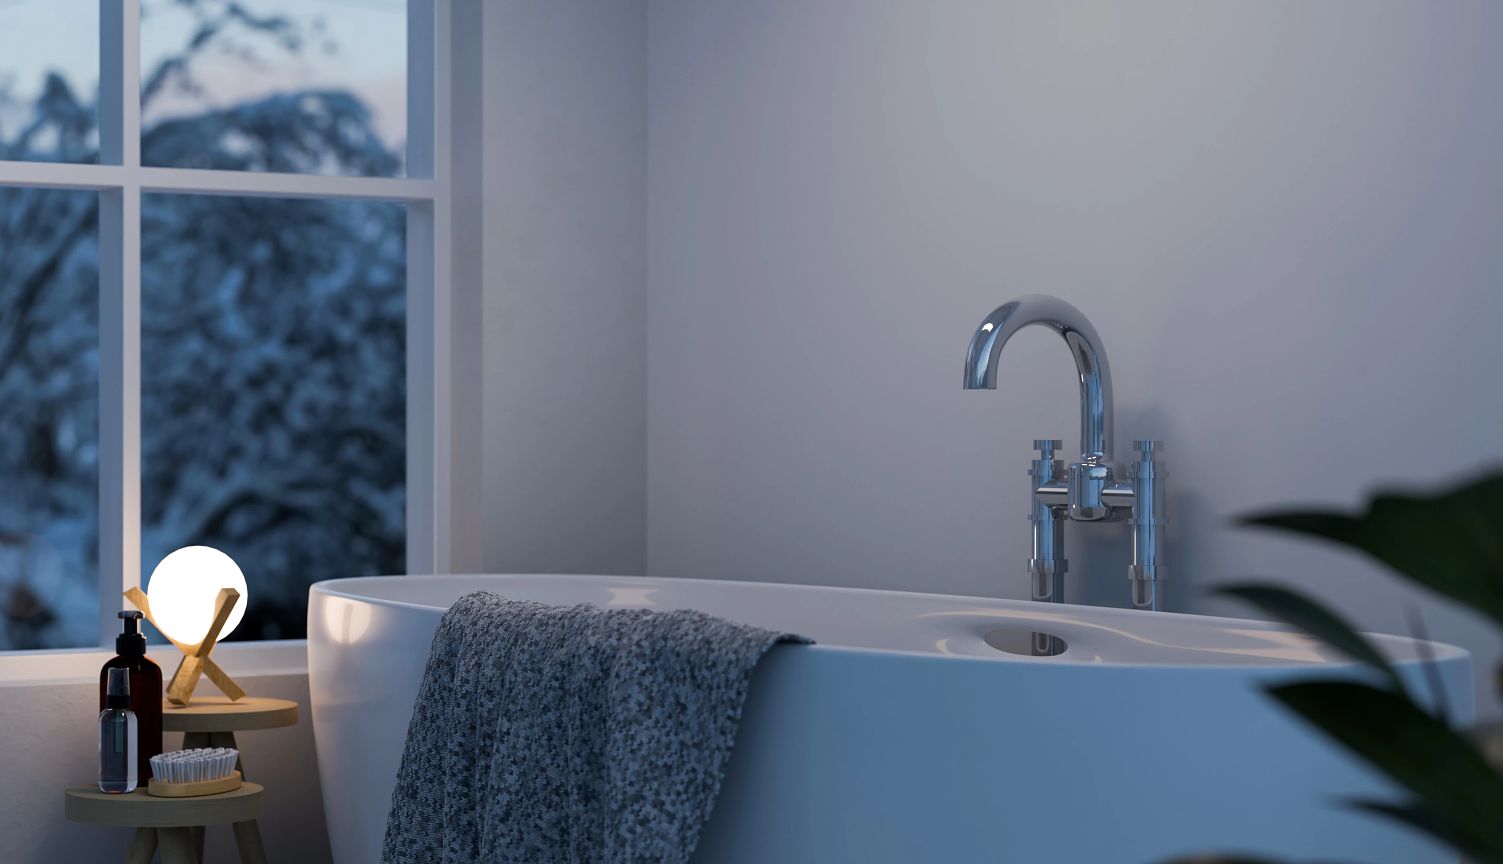 diseño interior moderno y confortable para un cuarto de baño en la noche, con bañera de lujo, iluminación suave y más